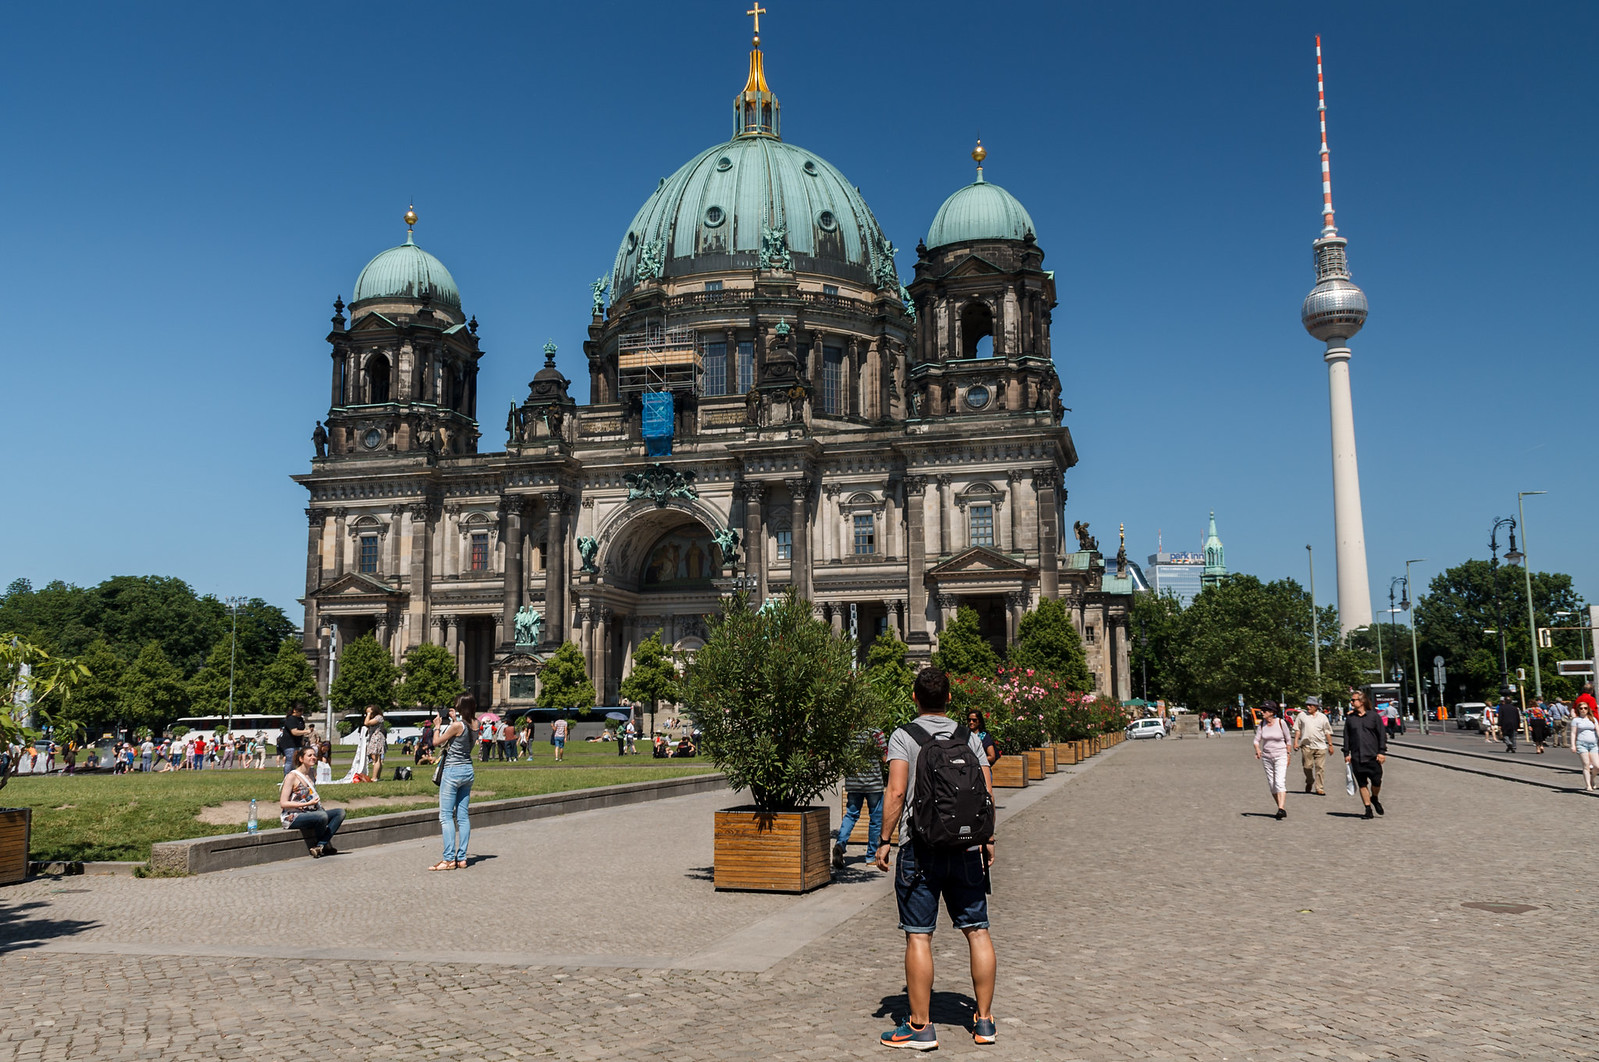 20 que hacer en Berlin en días – EL MUNDO EN MI CAMARA